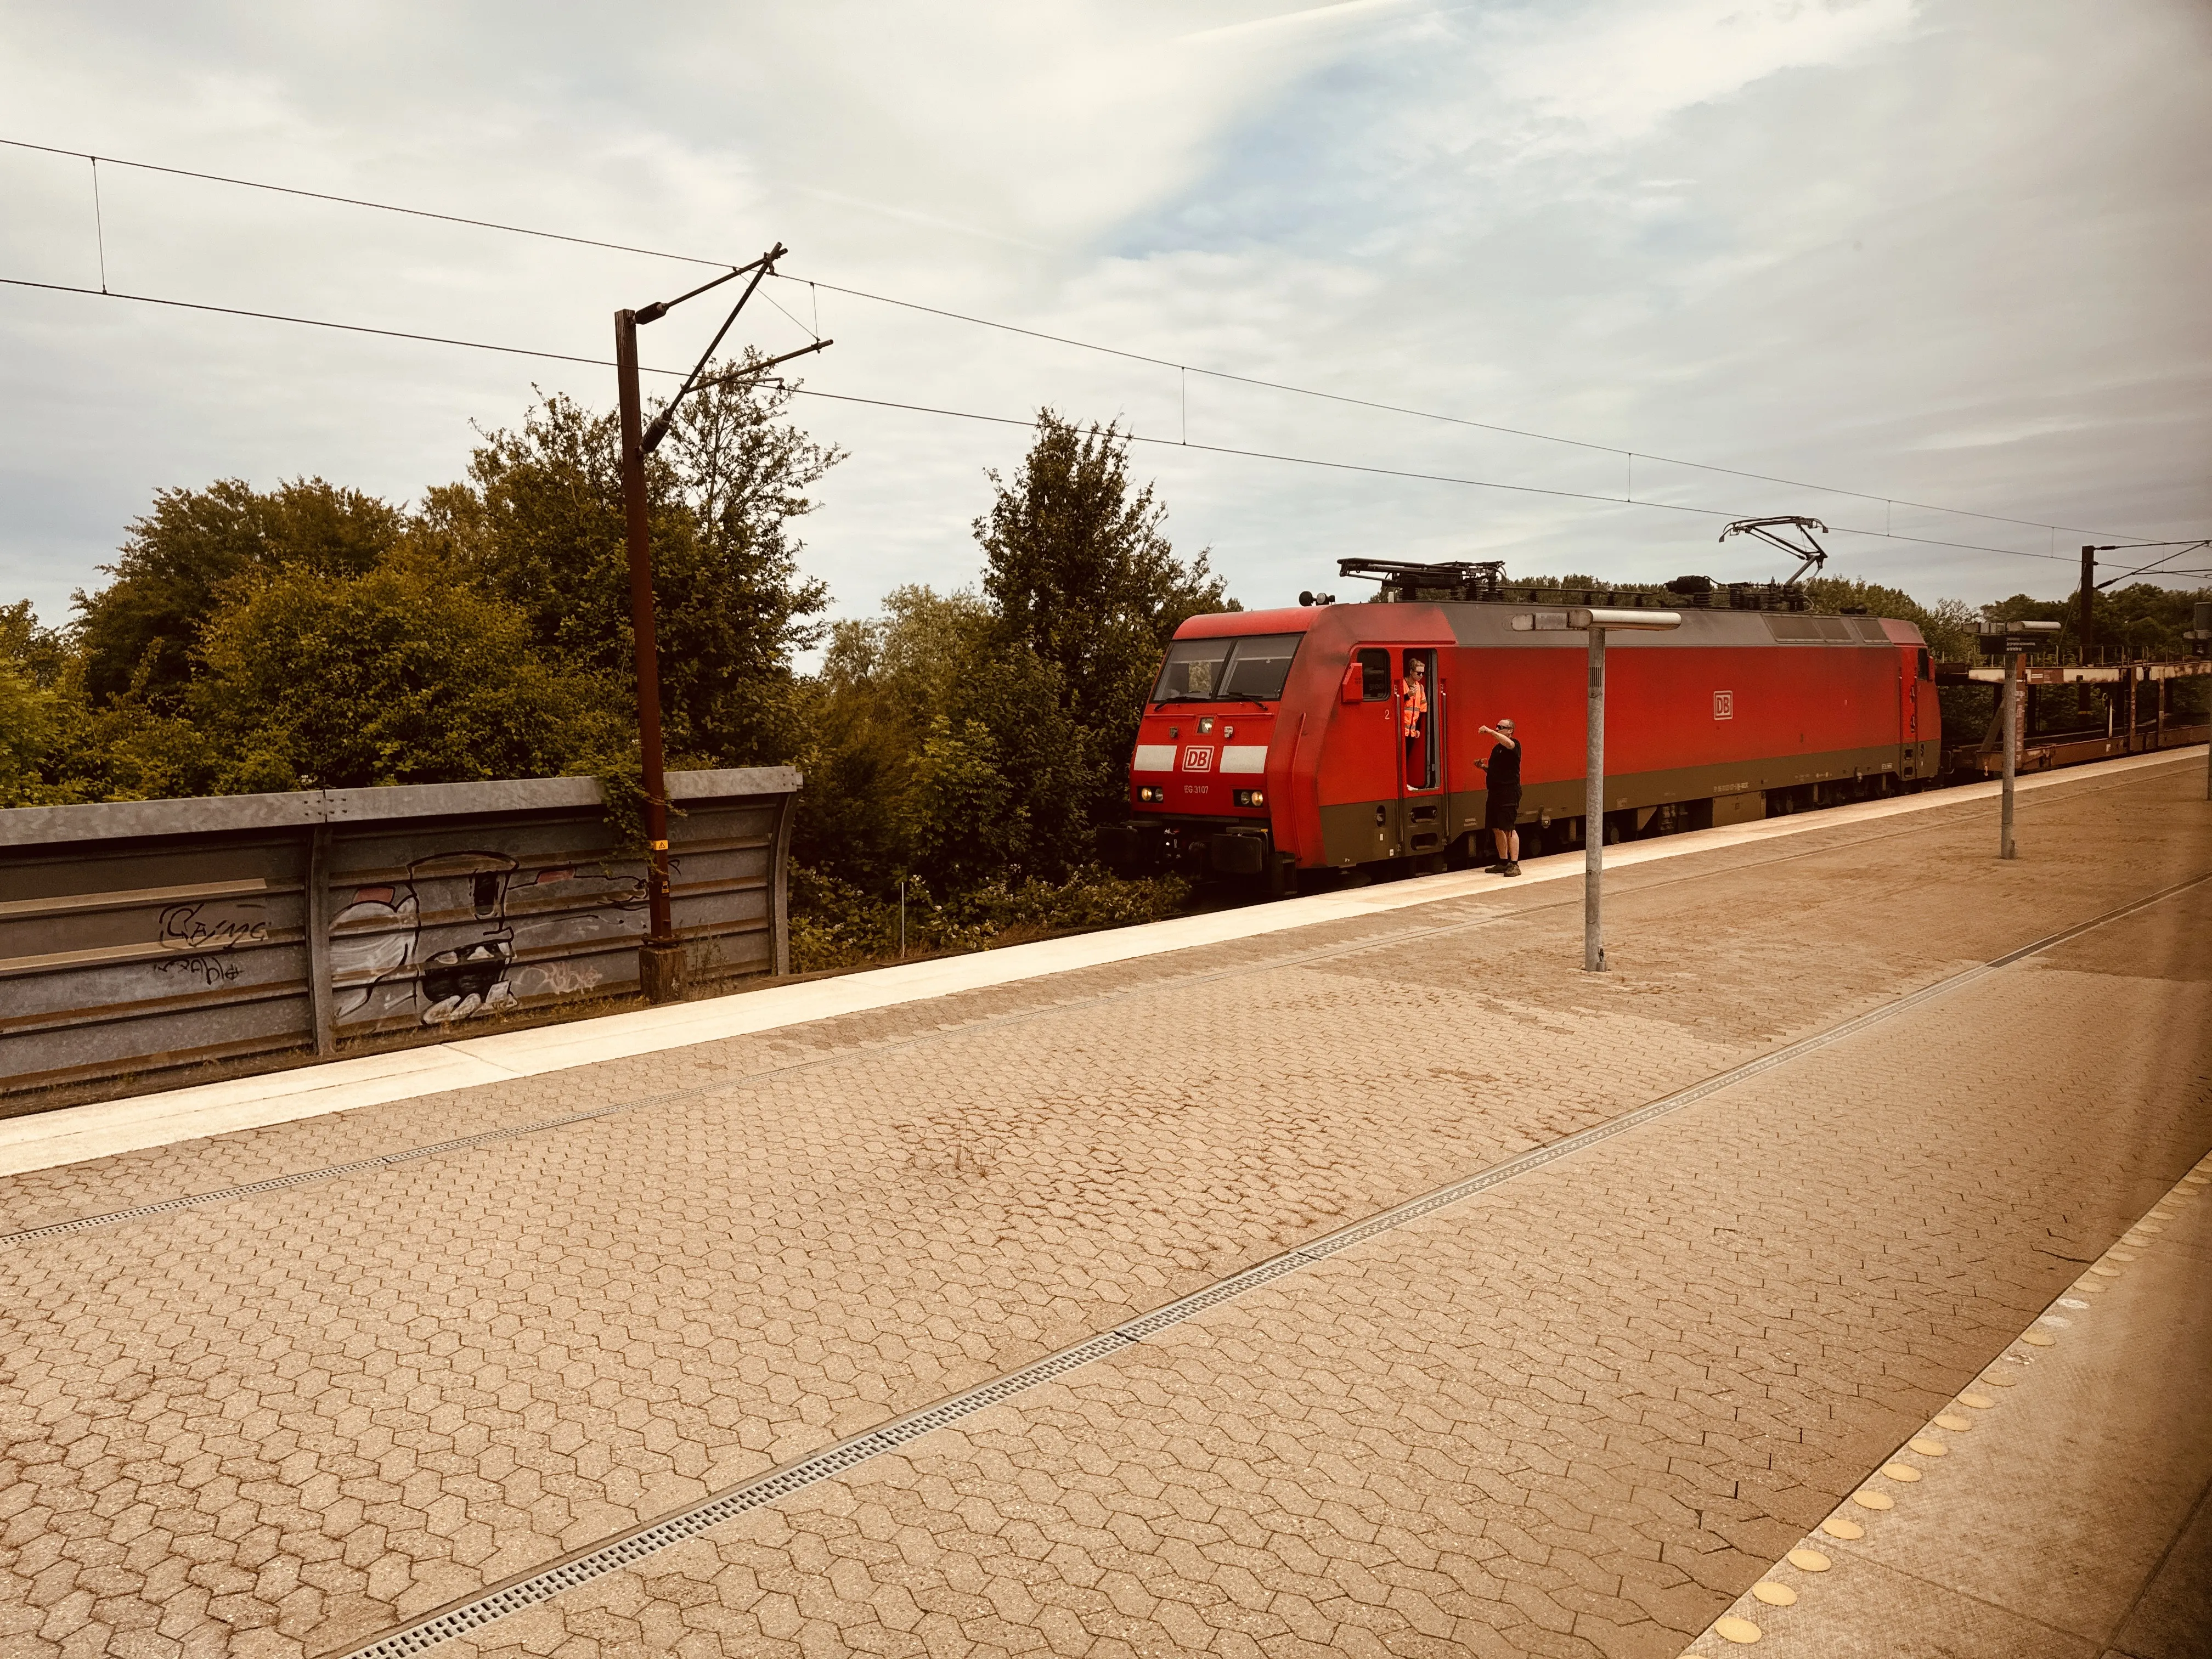 Billede af DBCSC EG 3107, tidligere DSB EG 3107 fotograferet ud for Nyborg Station.